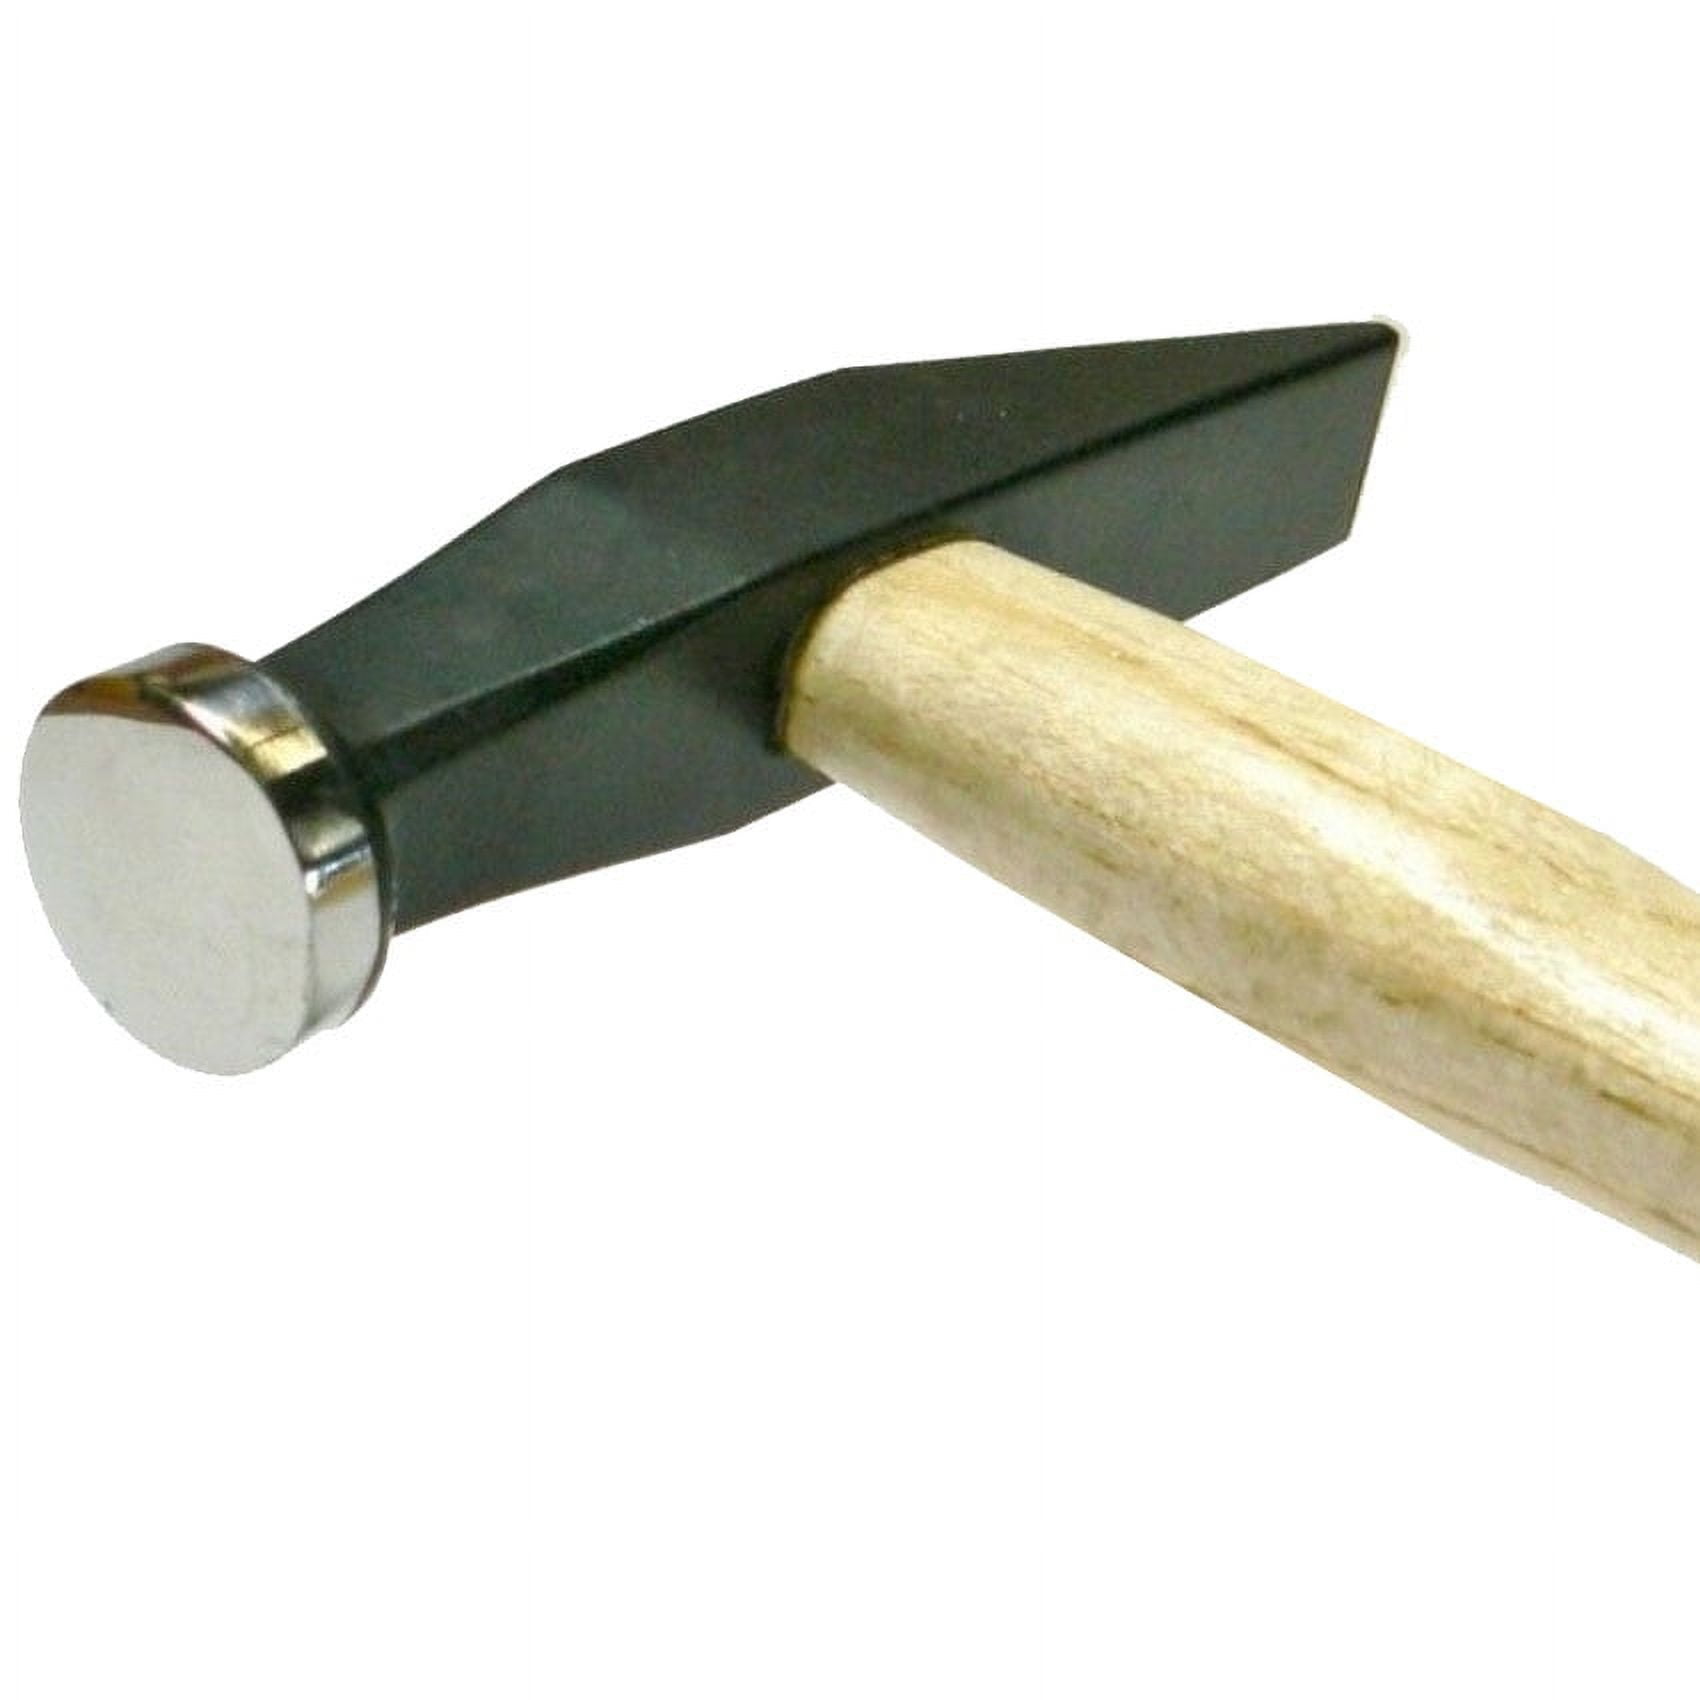 Antique Warner’s 2 7/8” Cross Peen Jewelers Hammer Original Handle H